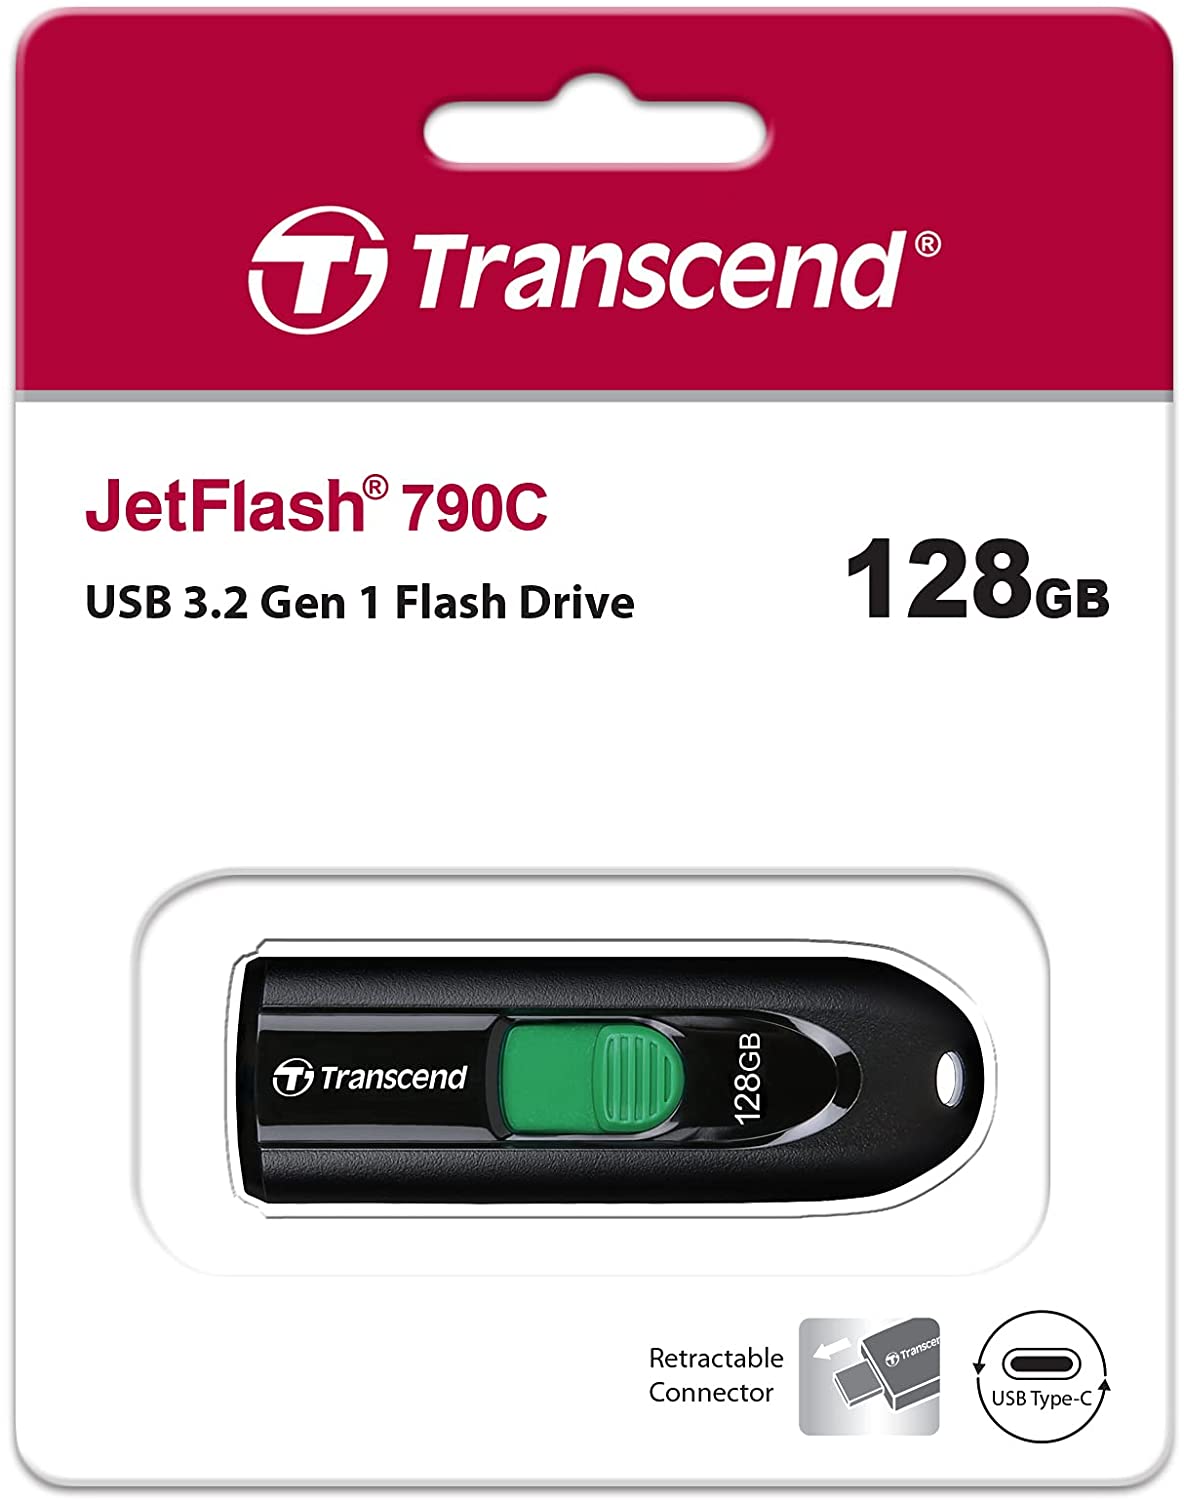 Transcend 128GB JetFlash 790C USB 3.2 Gen 1 Flash Drive TS128GJF790C